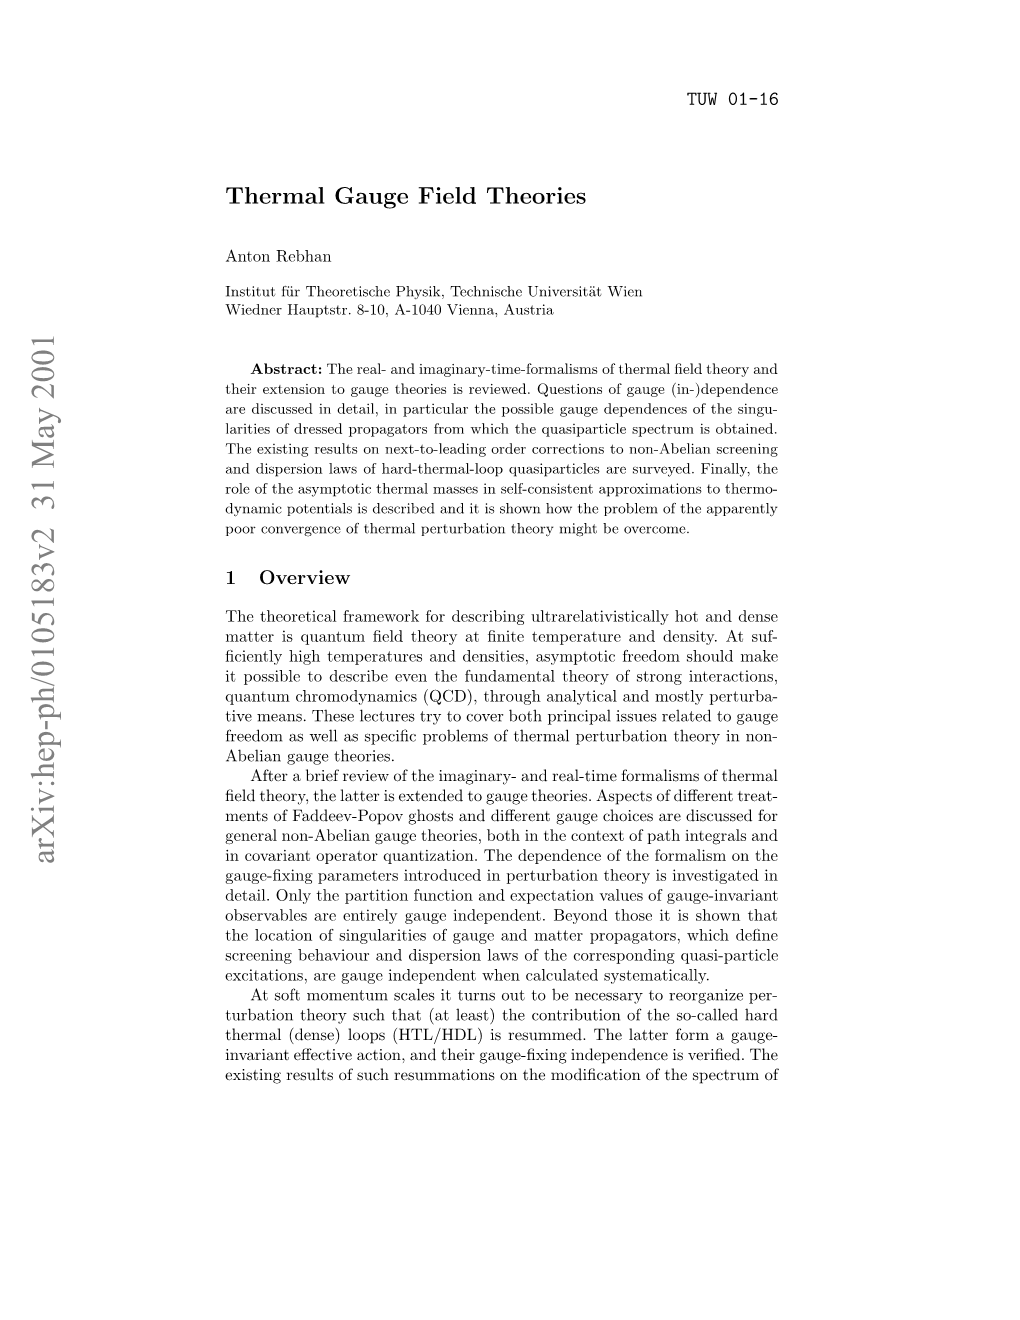 Thermal Gauge Field Theories 3